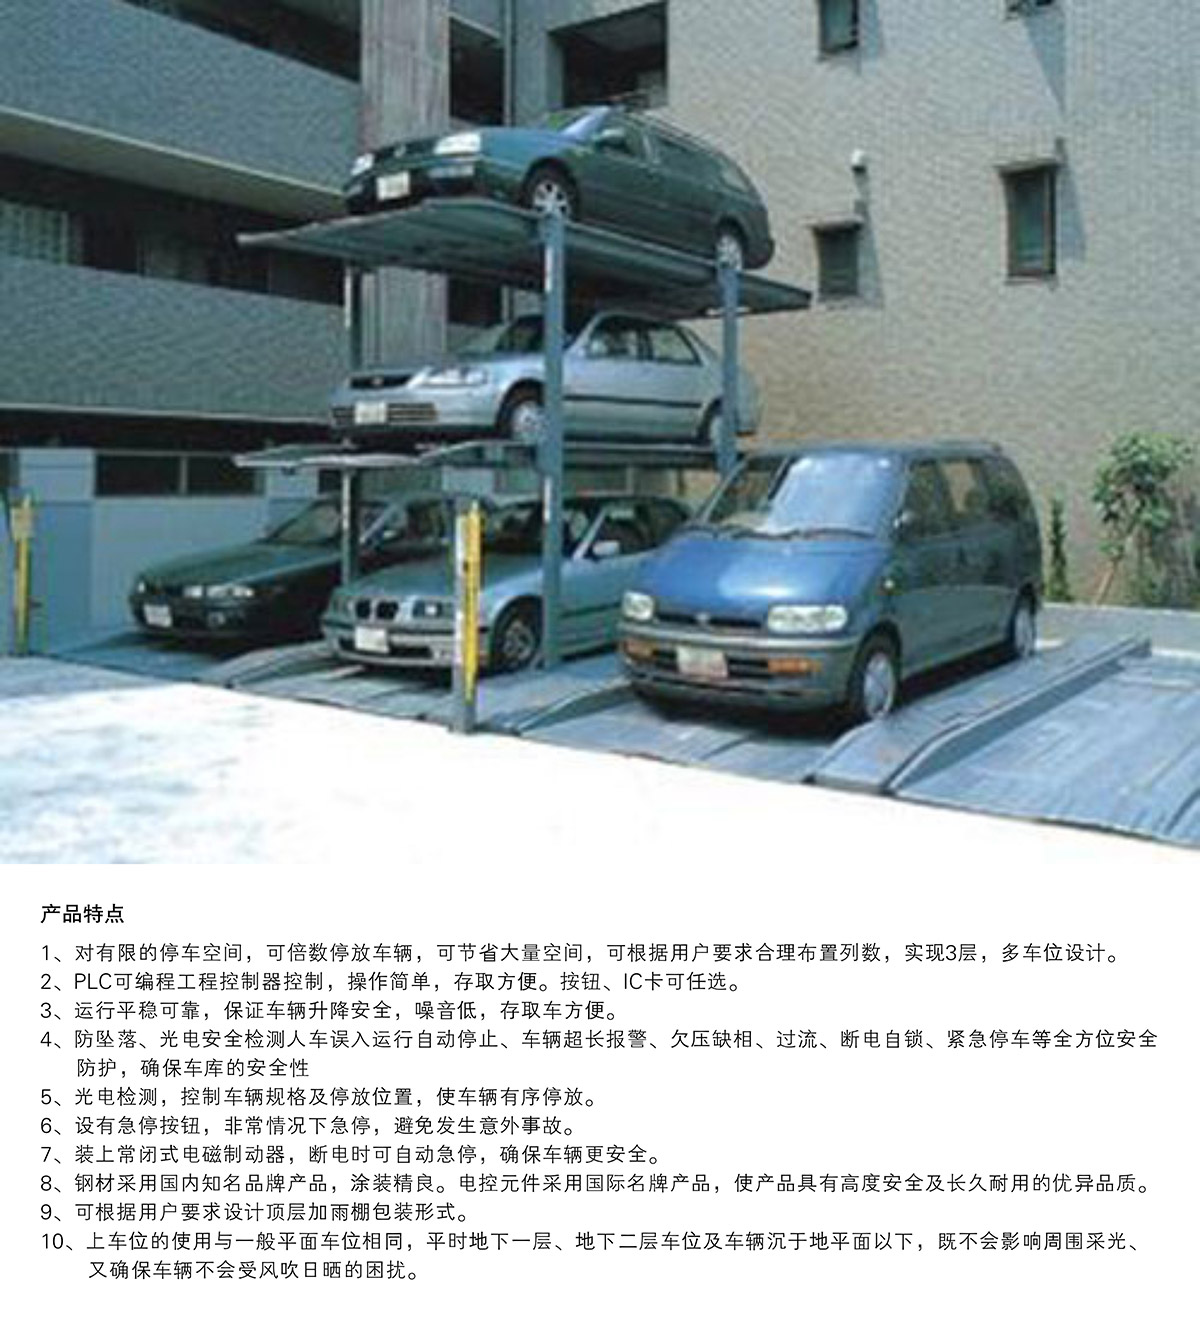 重庆PJS3D2三层地坑简易升降停车设备产品特点.jpg